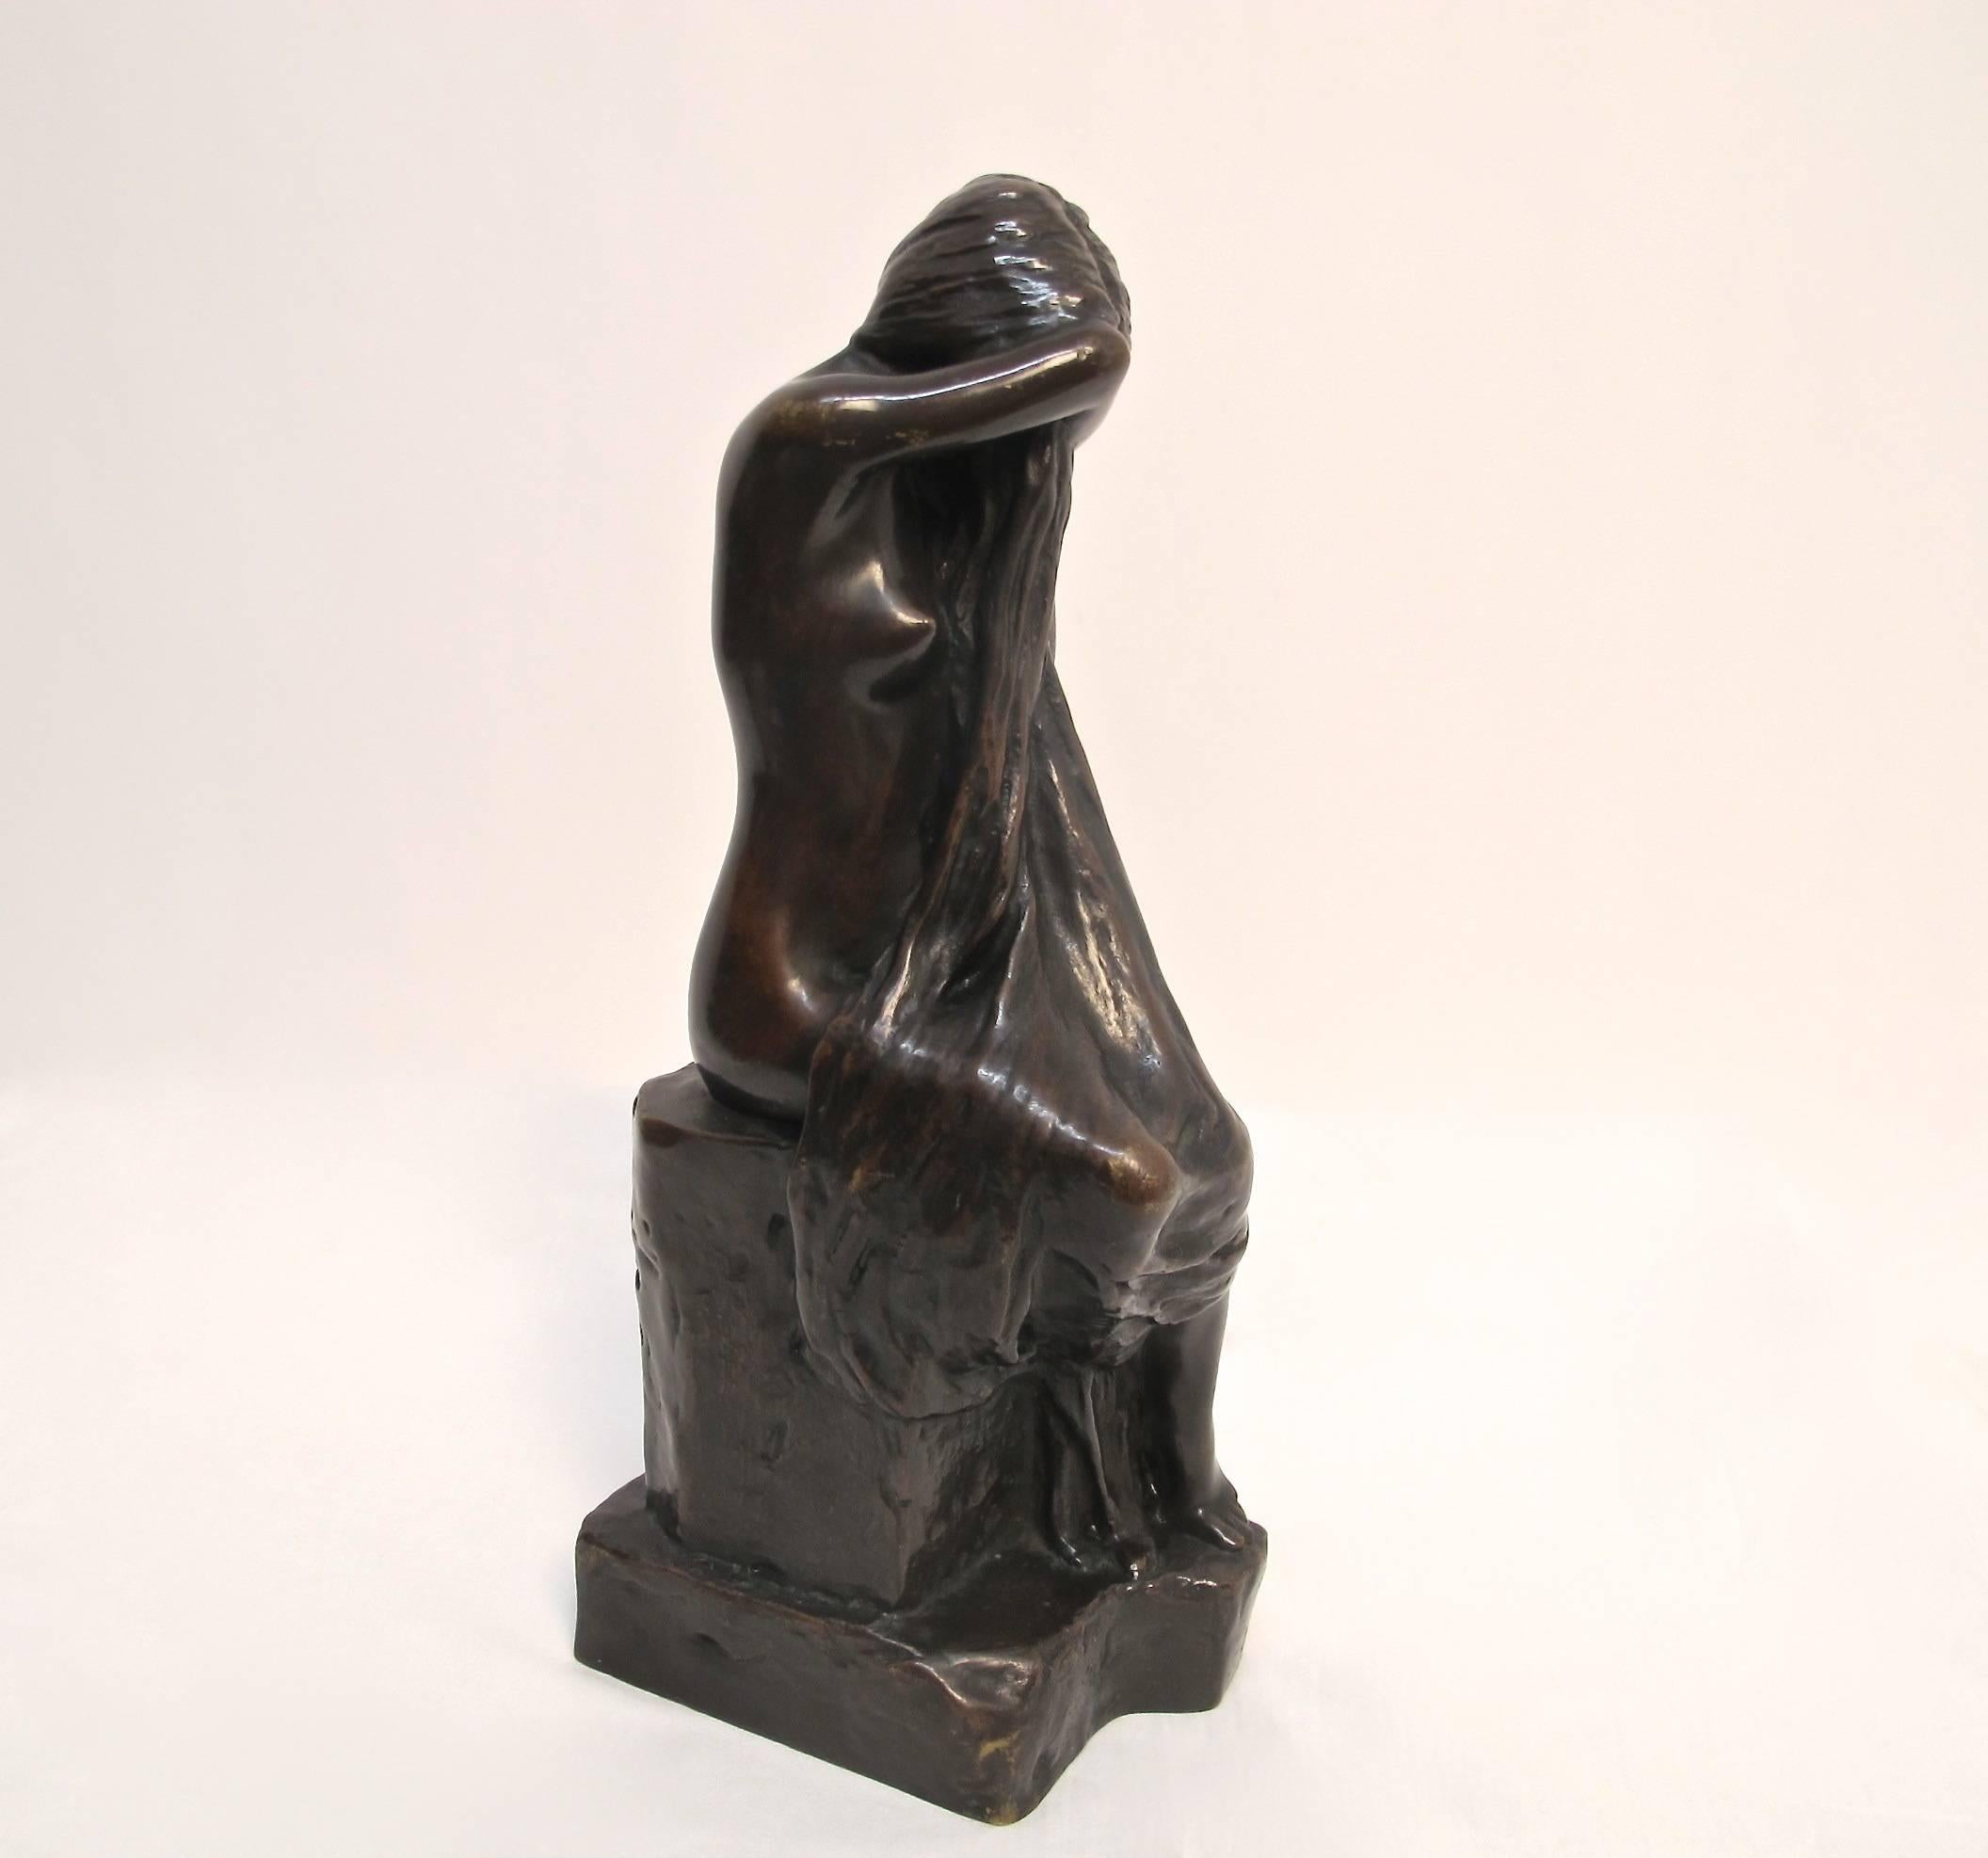 Albert Bartholomew (né en 1848 et décédé en 1928), bronze d'une jeune fille nue se couvrant le visage, figure connue sous le nom de La Pleureuse. Signé et marque de fonderie sur la base inférieure, fin du XIXe siècle.
Albert Bartholomew était